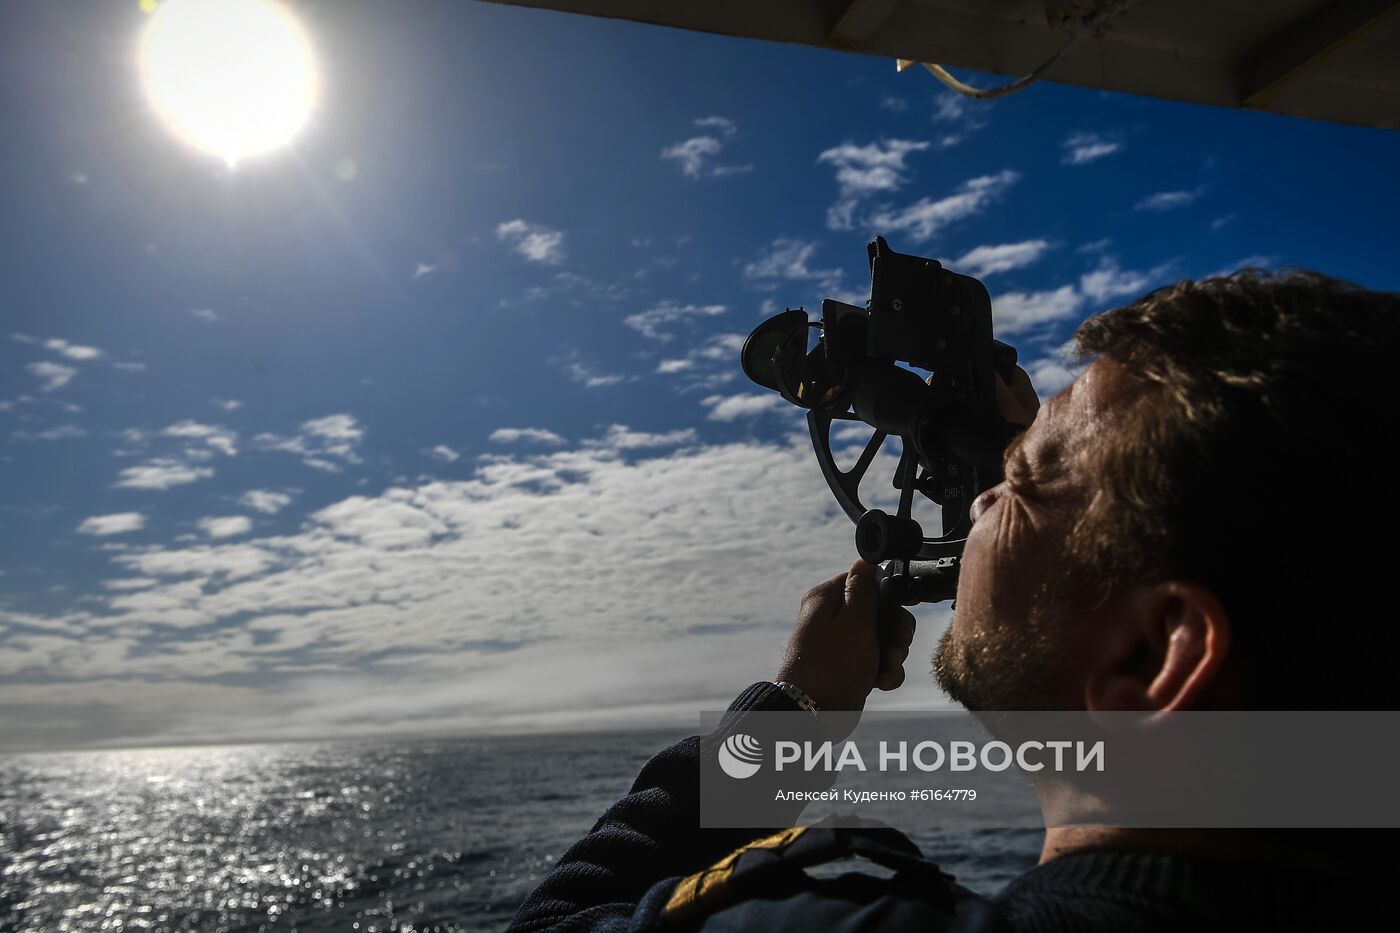 Антарктическая экспедиция на исследовательском судне  "Адмирал Владимирский"